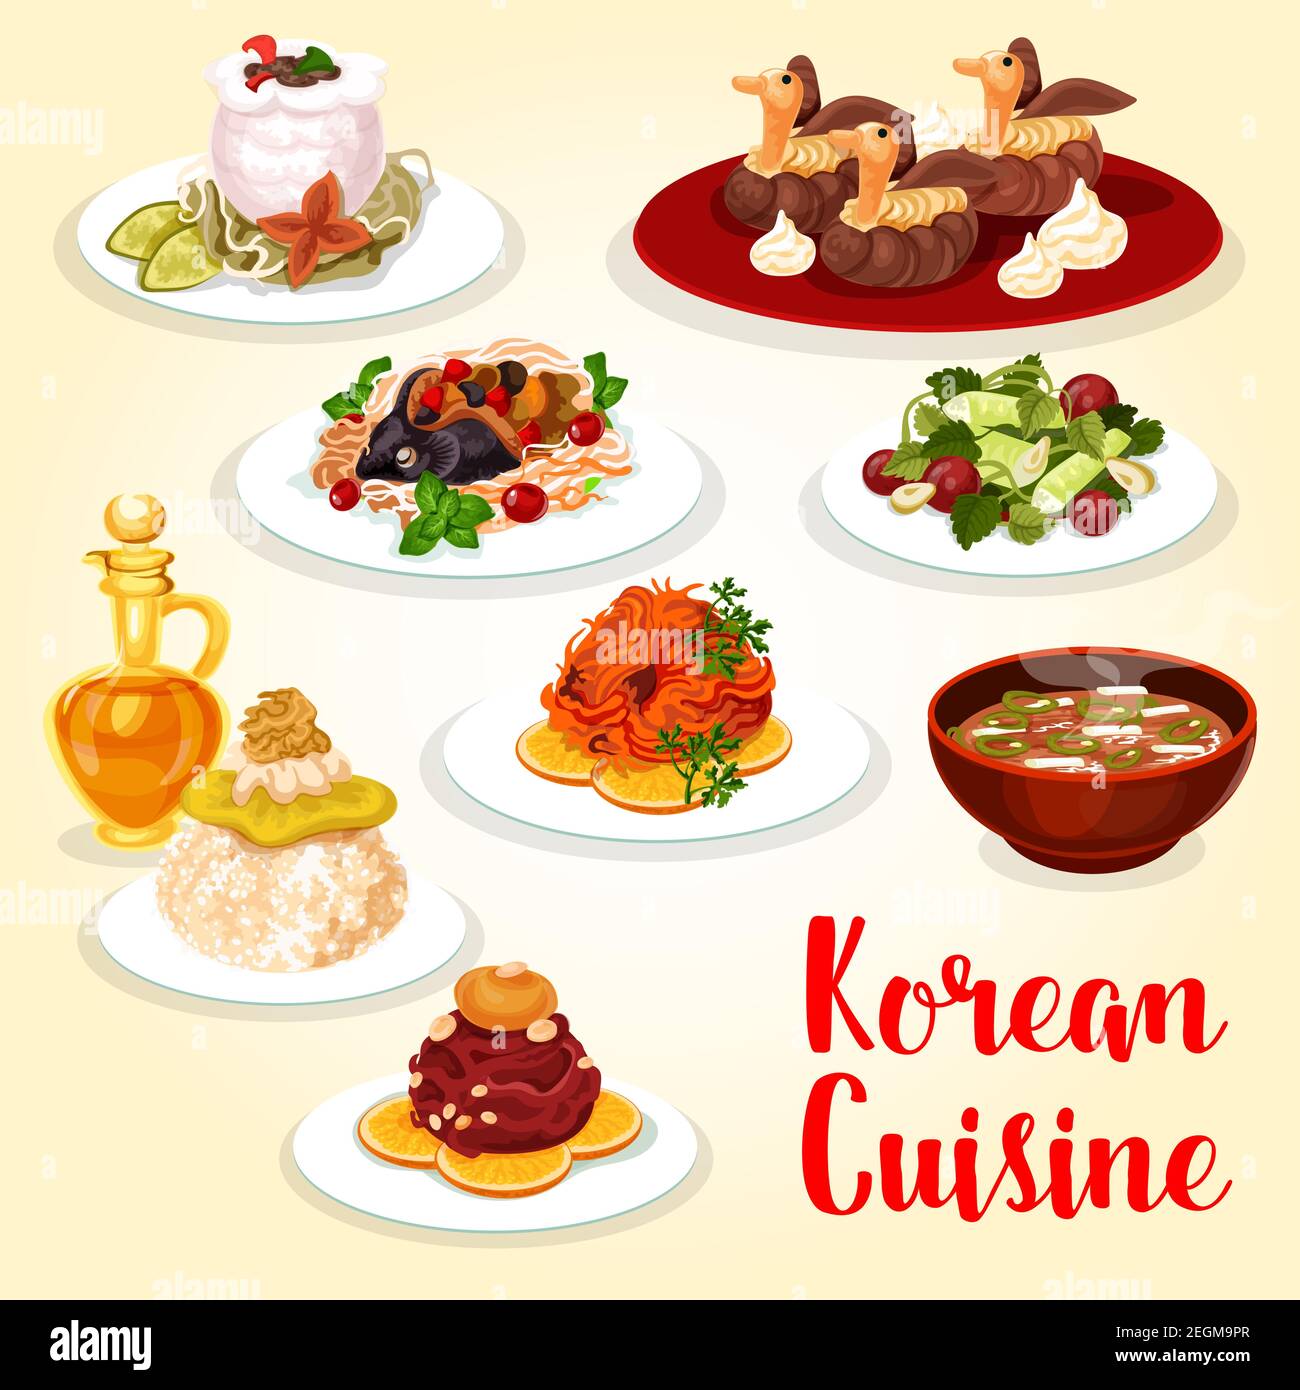 Koreanische Küche Asian Food Ikone mit Fleisch und Fisch Gericht. Frisches Rind und gesalzene Forelle, serviert mit Reis, Gurkensalat und Schweinekimchi-Suppe, gebackenem Karpfen Stock Vektor